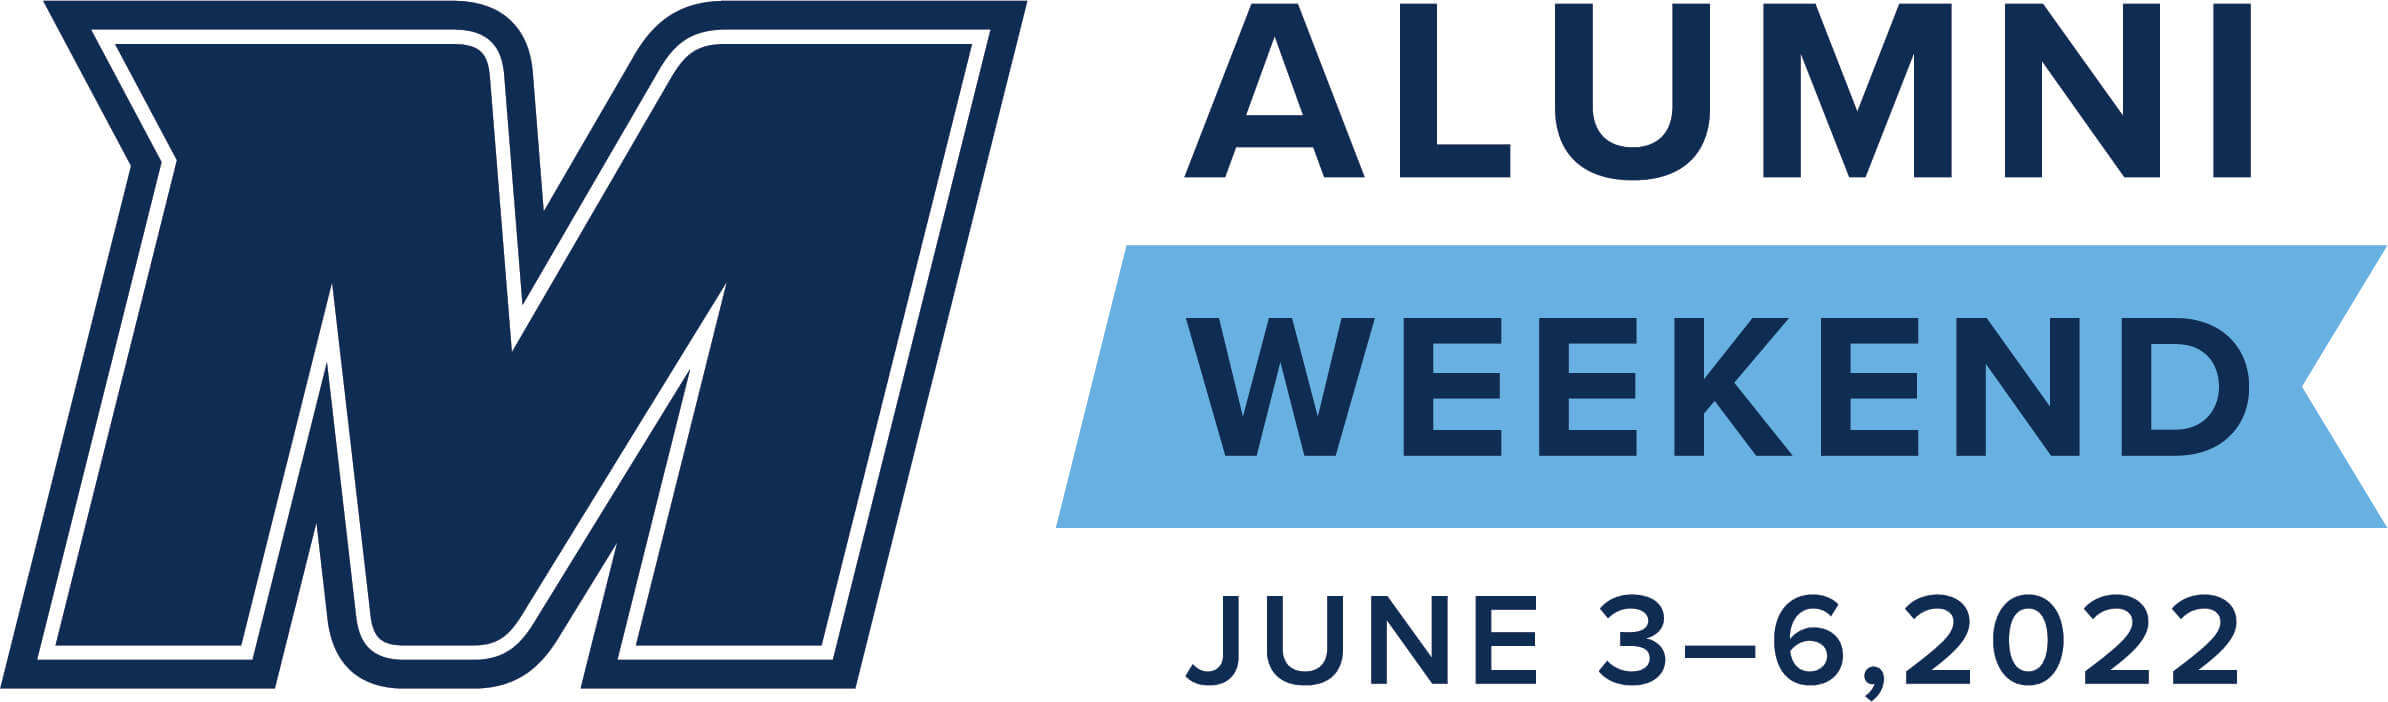 Alumni Weekend - June 3 to 6, 2022